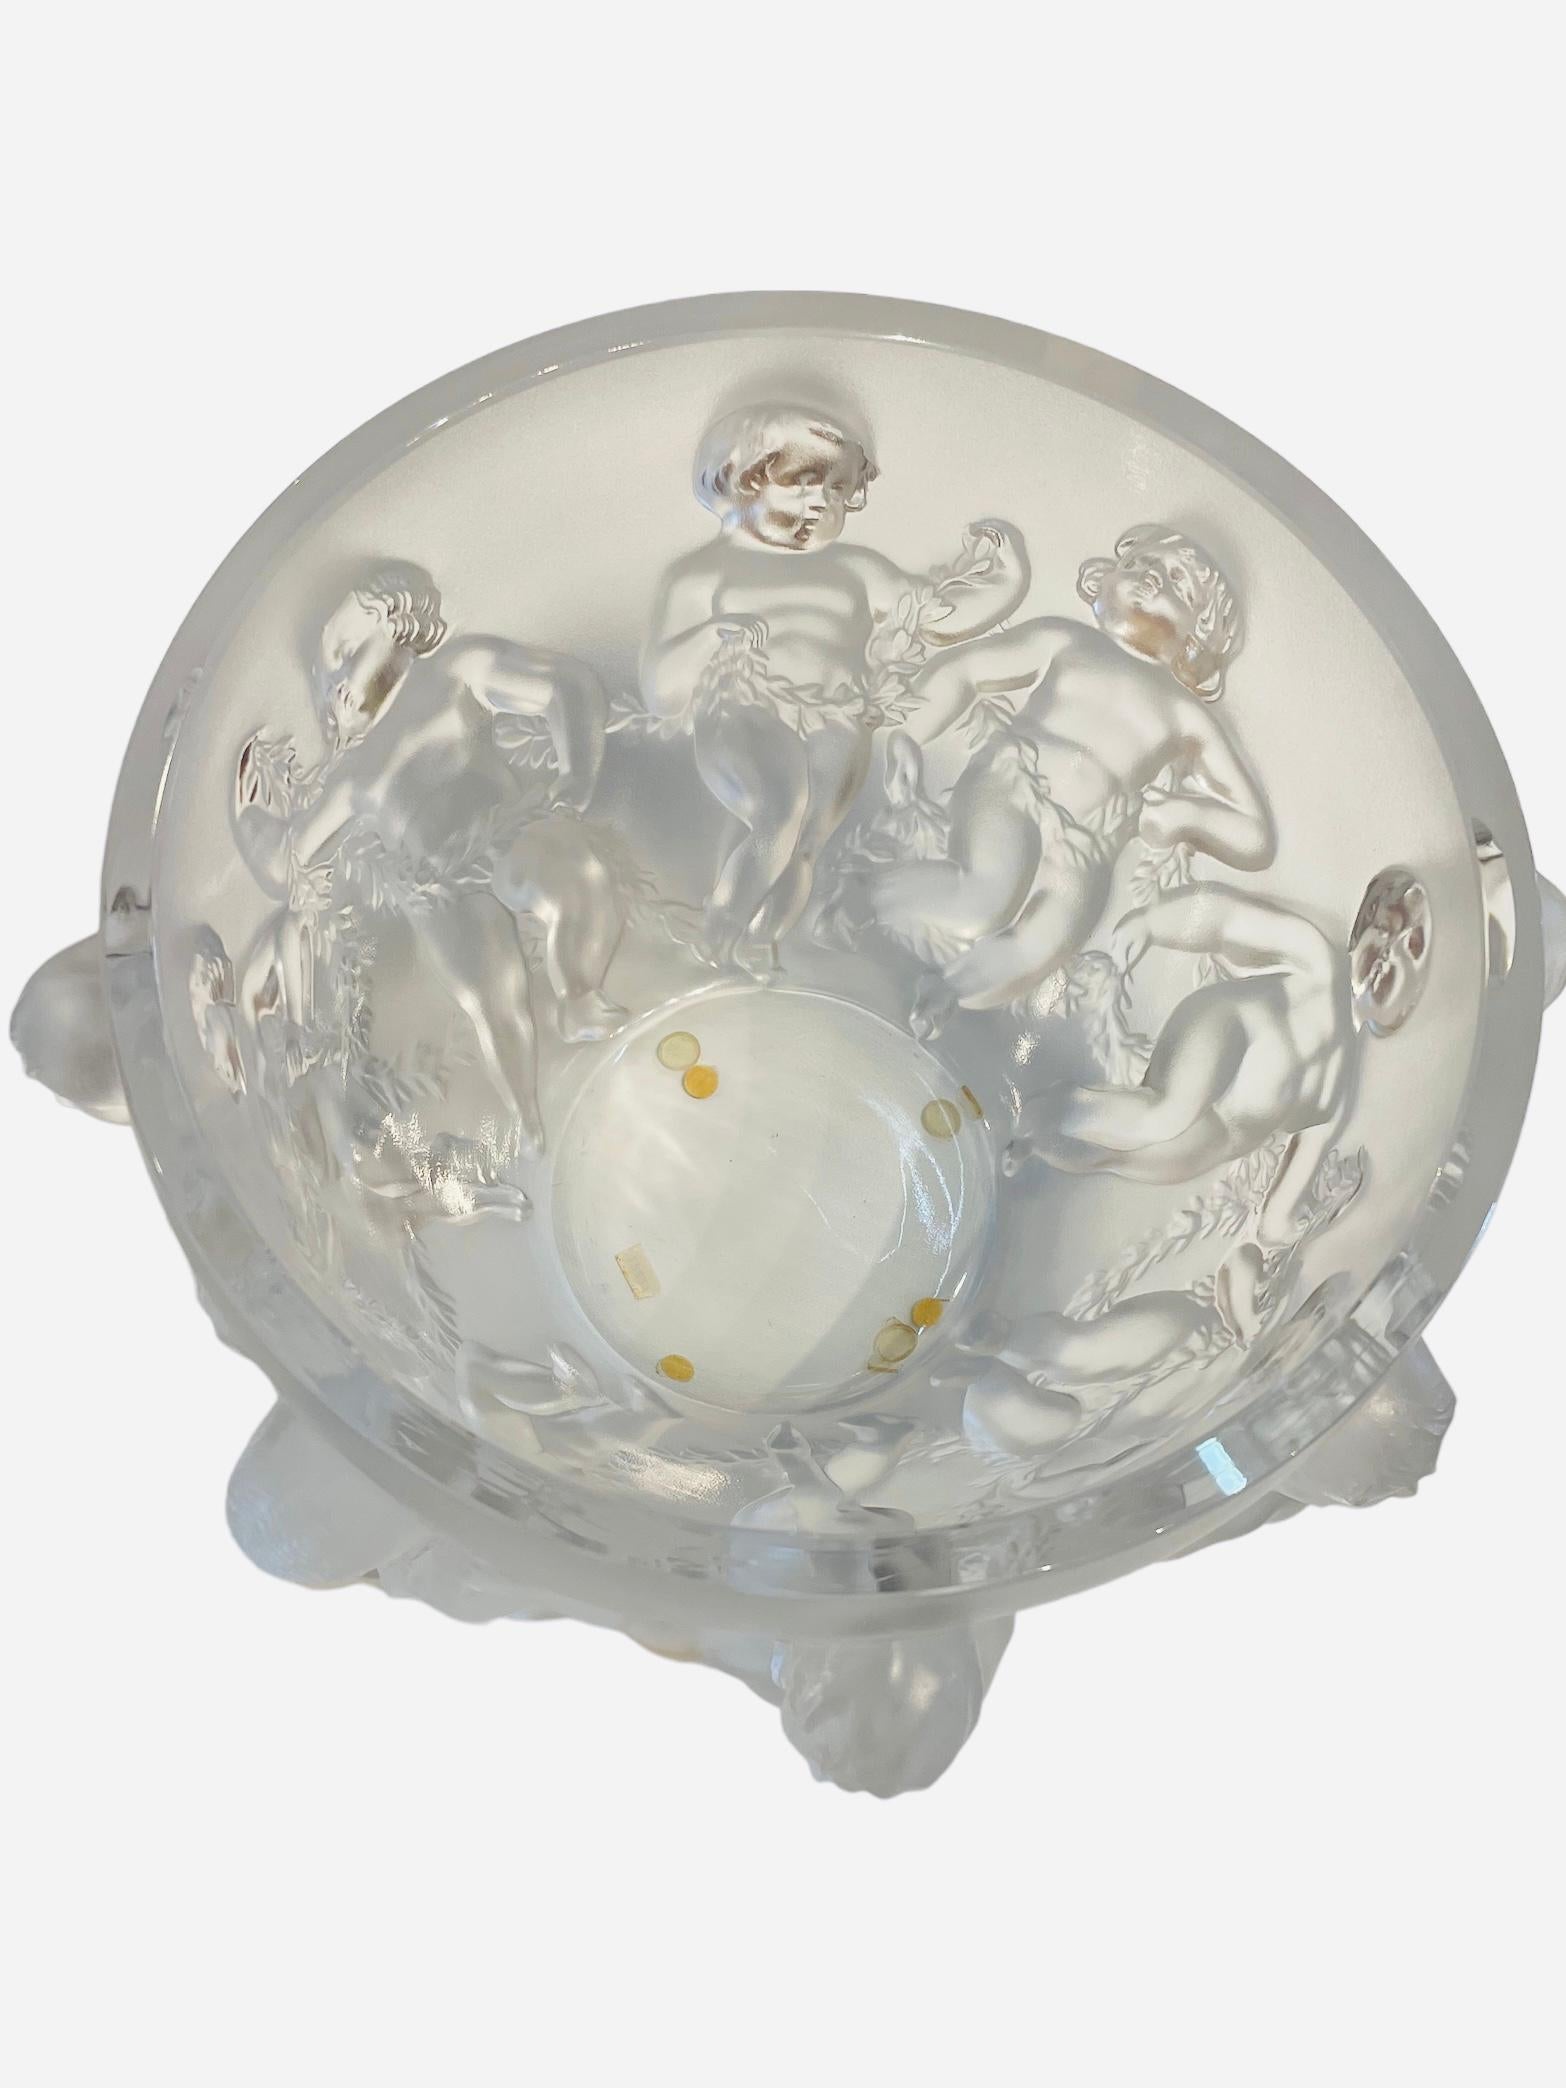 Dies ist ein Lalique gefrostetem Kristall 